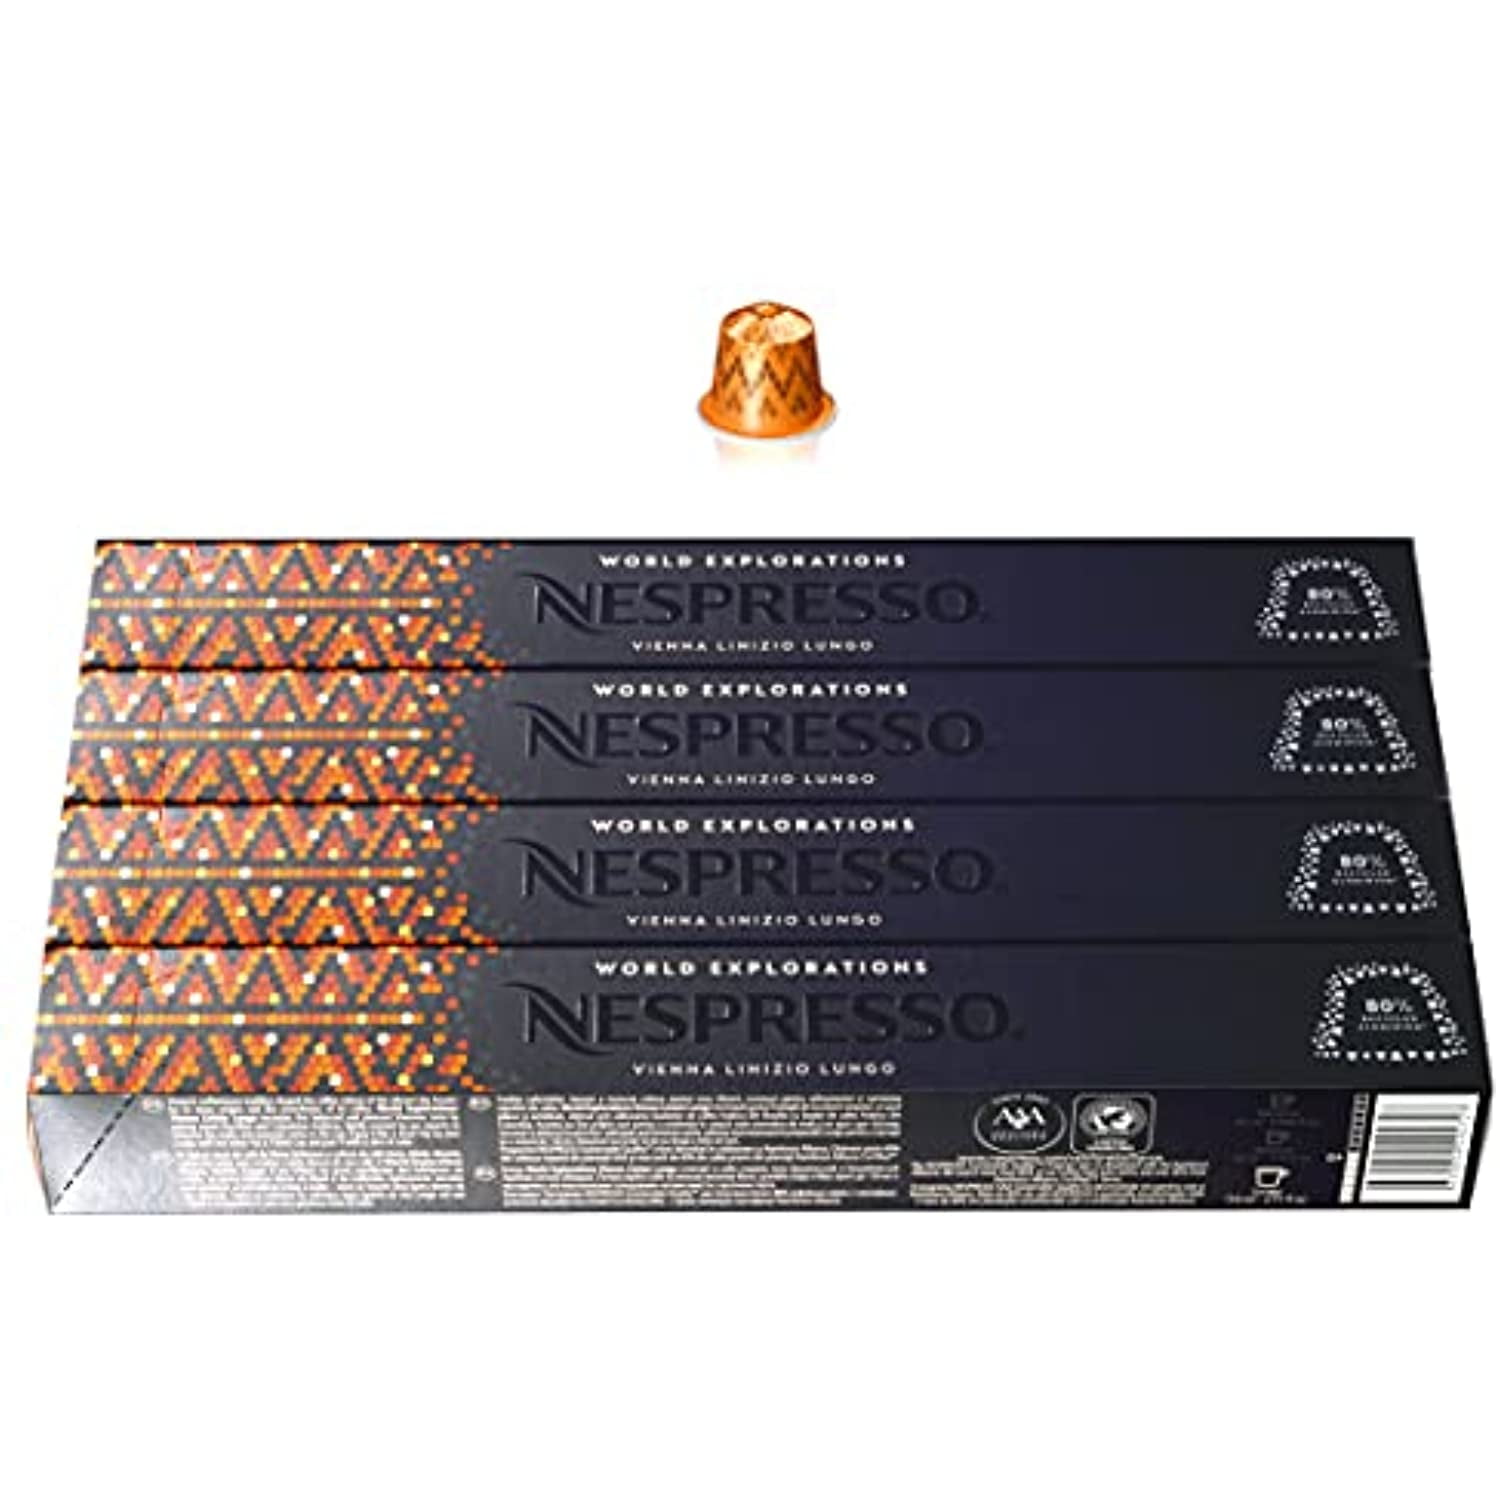 L'OR Delizioso Maxi pack - 40 Capsules pour Nespresso à 10,99 €